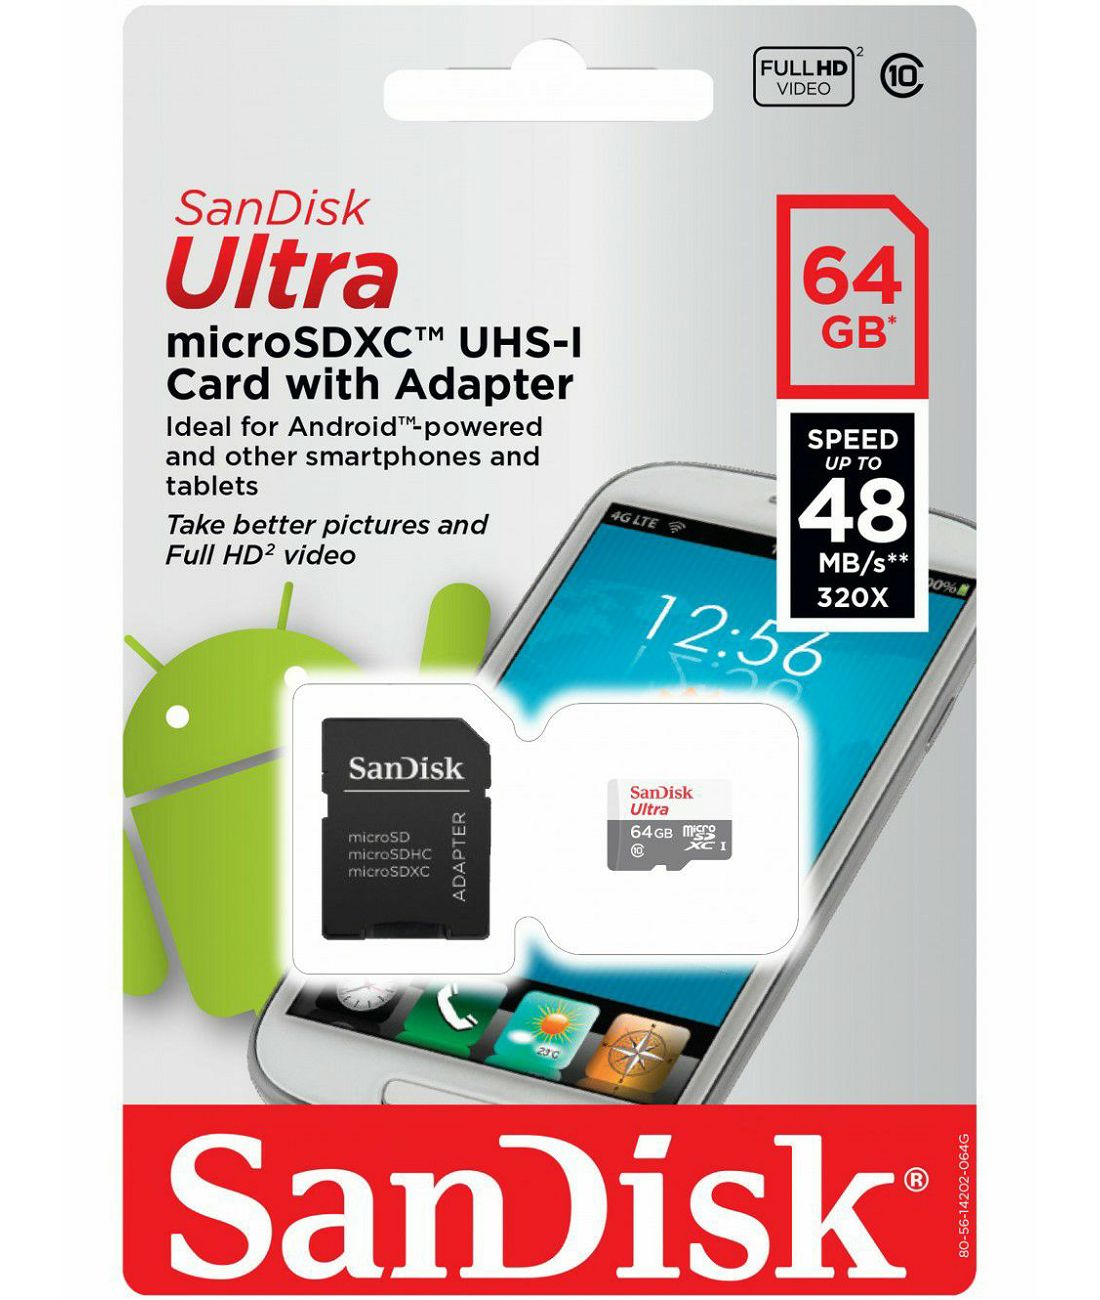 SanDisk microSDXC 64GB 48MB/s Ultra uSD Class 10 UHS Card + Adapter N/J memorijska kartica (SDSQUNB-064G-GN3MA)